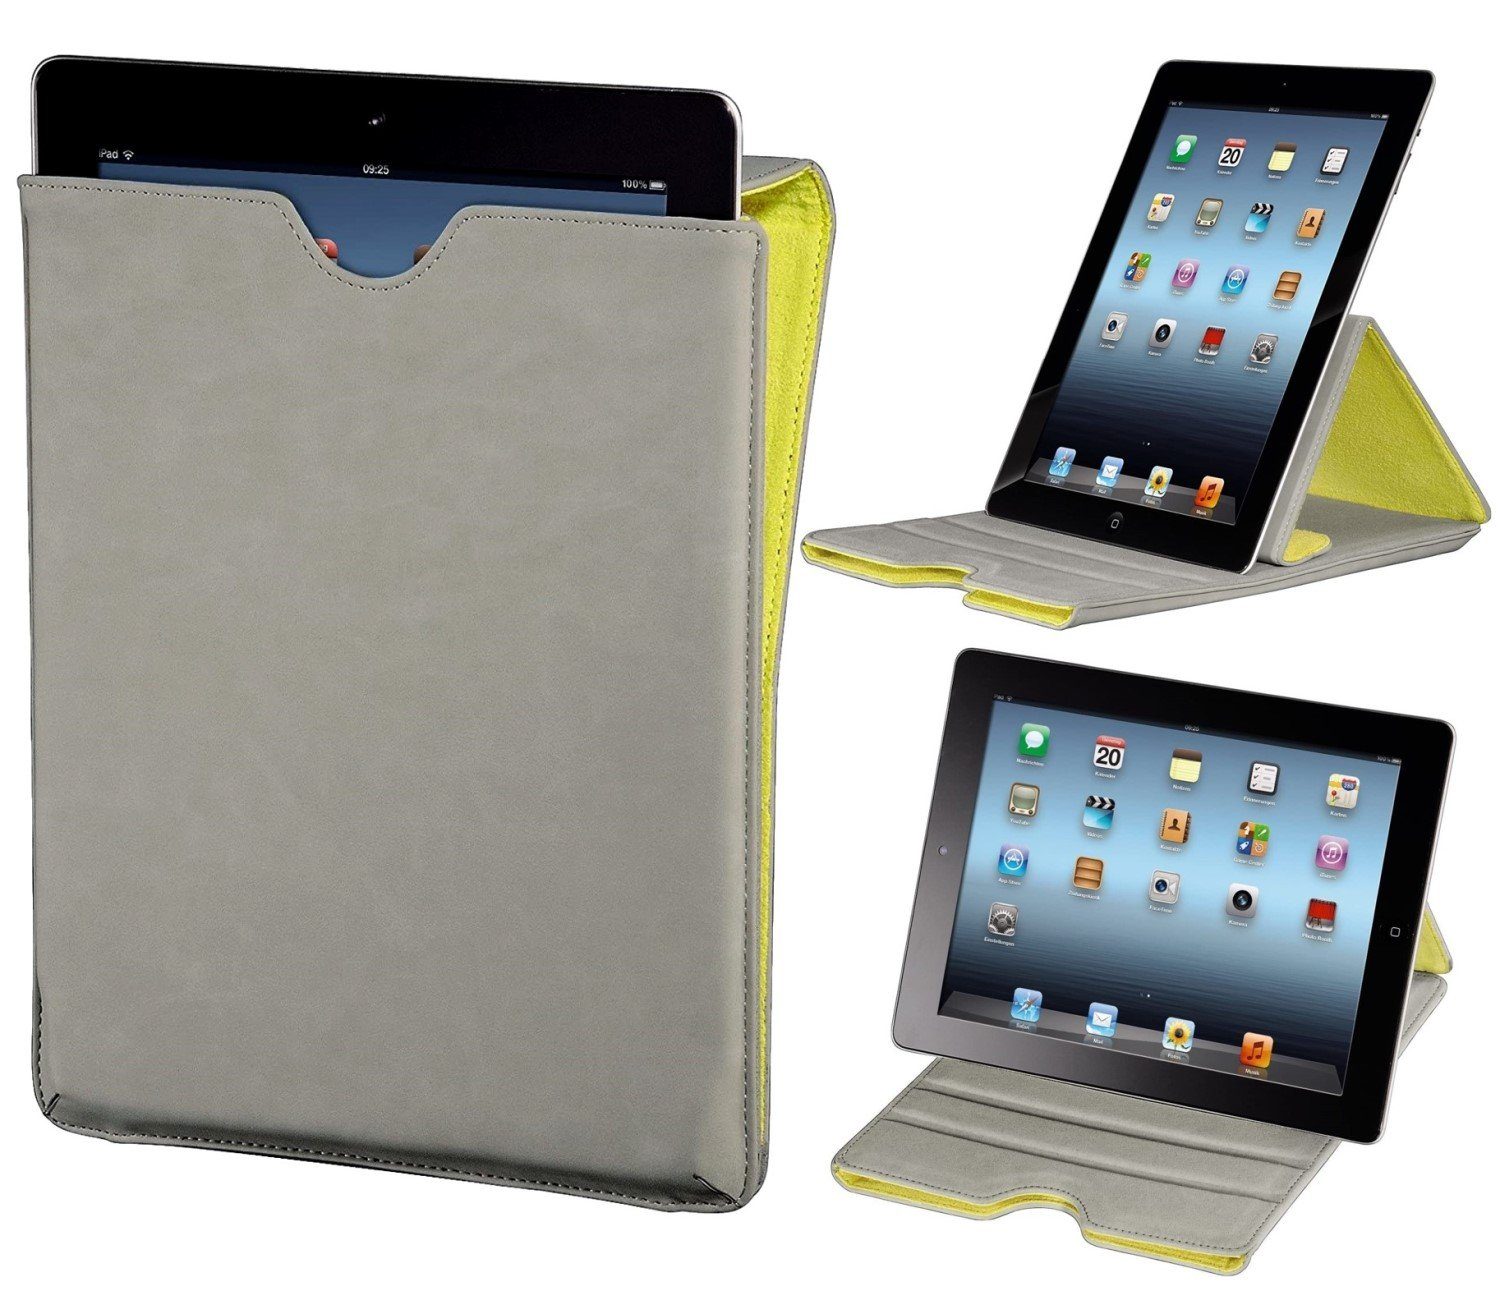 Hama Tablet-Hülle Tasche Ständer Cover Schutz-Hülle Case Grau, Anti-Kratz,  Klapp-Tasche mit Standfunktion, passend für iPad Serie 9,7"/ Tablet PC 9,4"  9,7" 10" 10,1" 10,2" 10,4" 10,5" Zoll Innenmaße beachten!